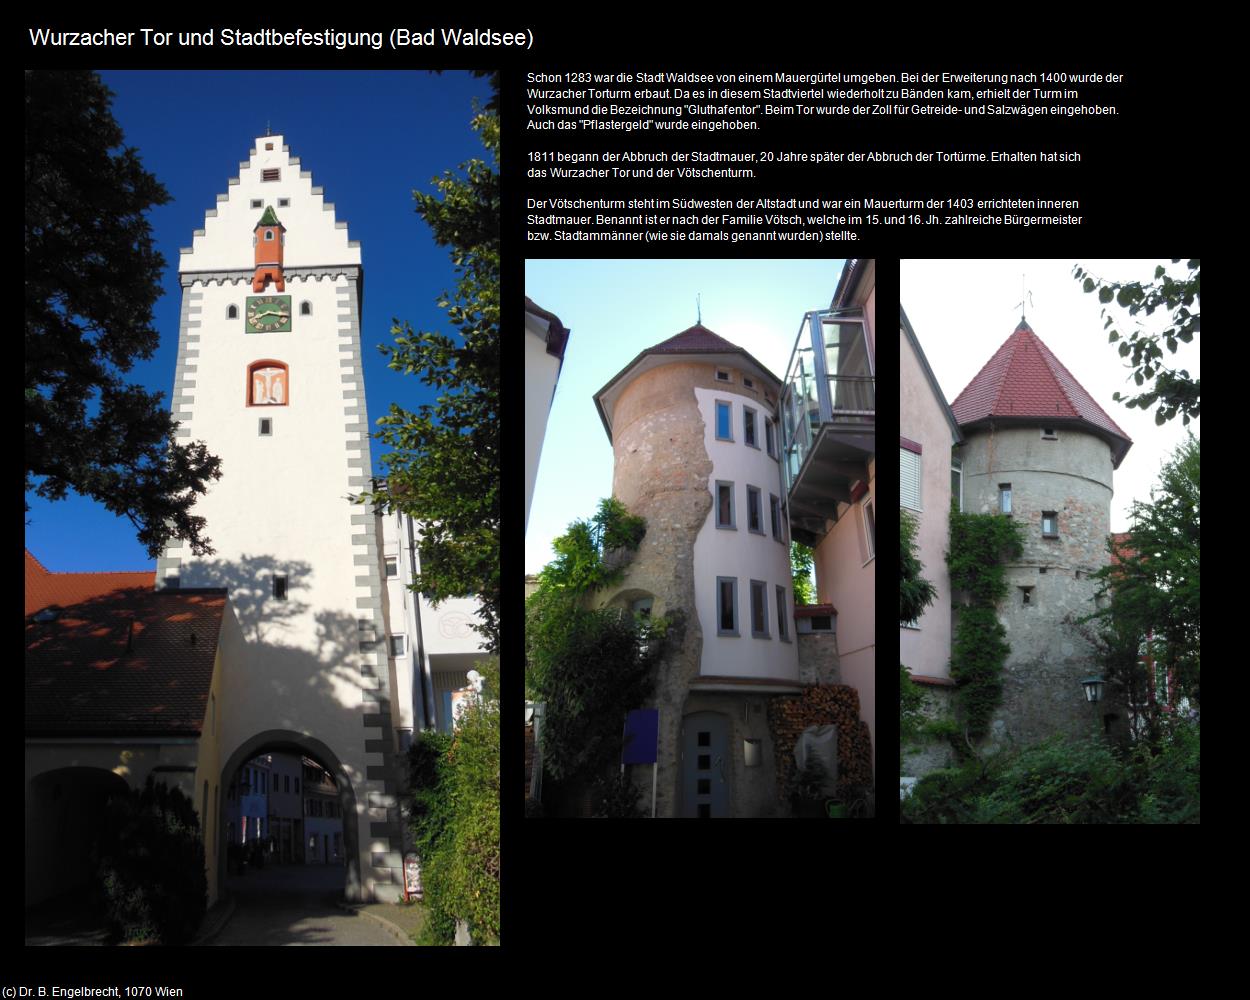 Wurzacher Tor und Stadtbefestigung (Bad Waldsee) in Kulturatlas-BADEN-WÜRTTEMBERG